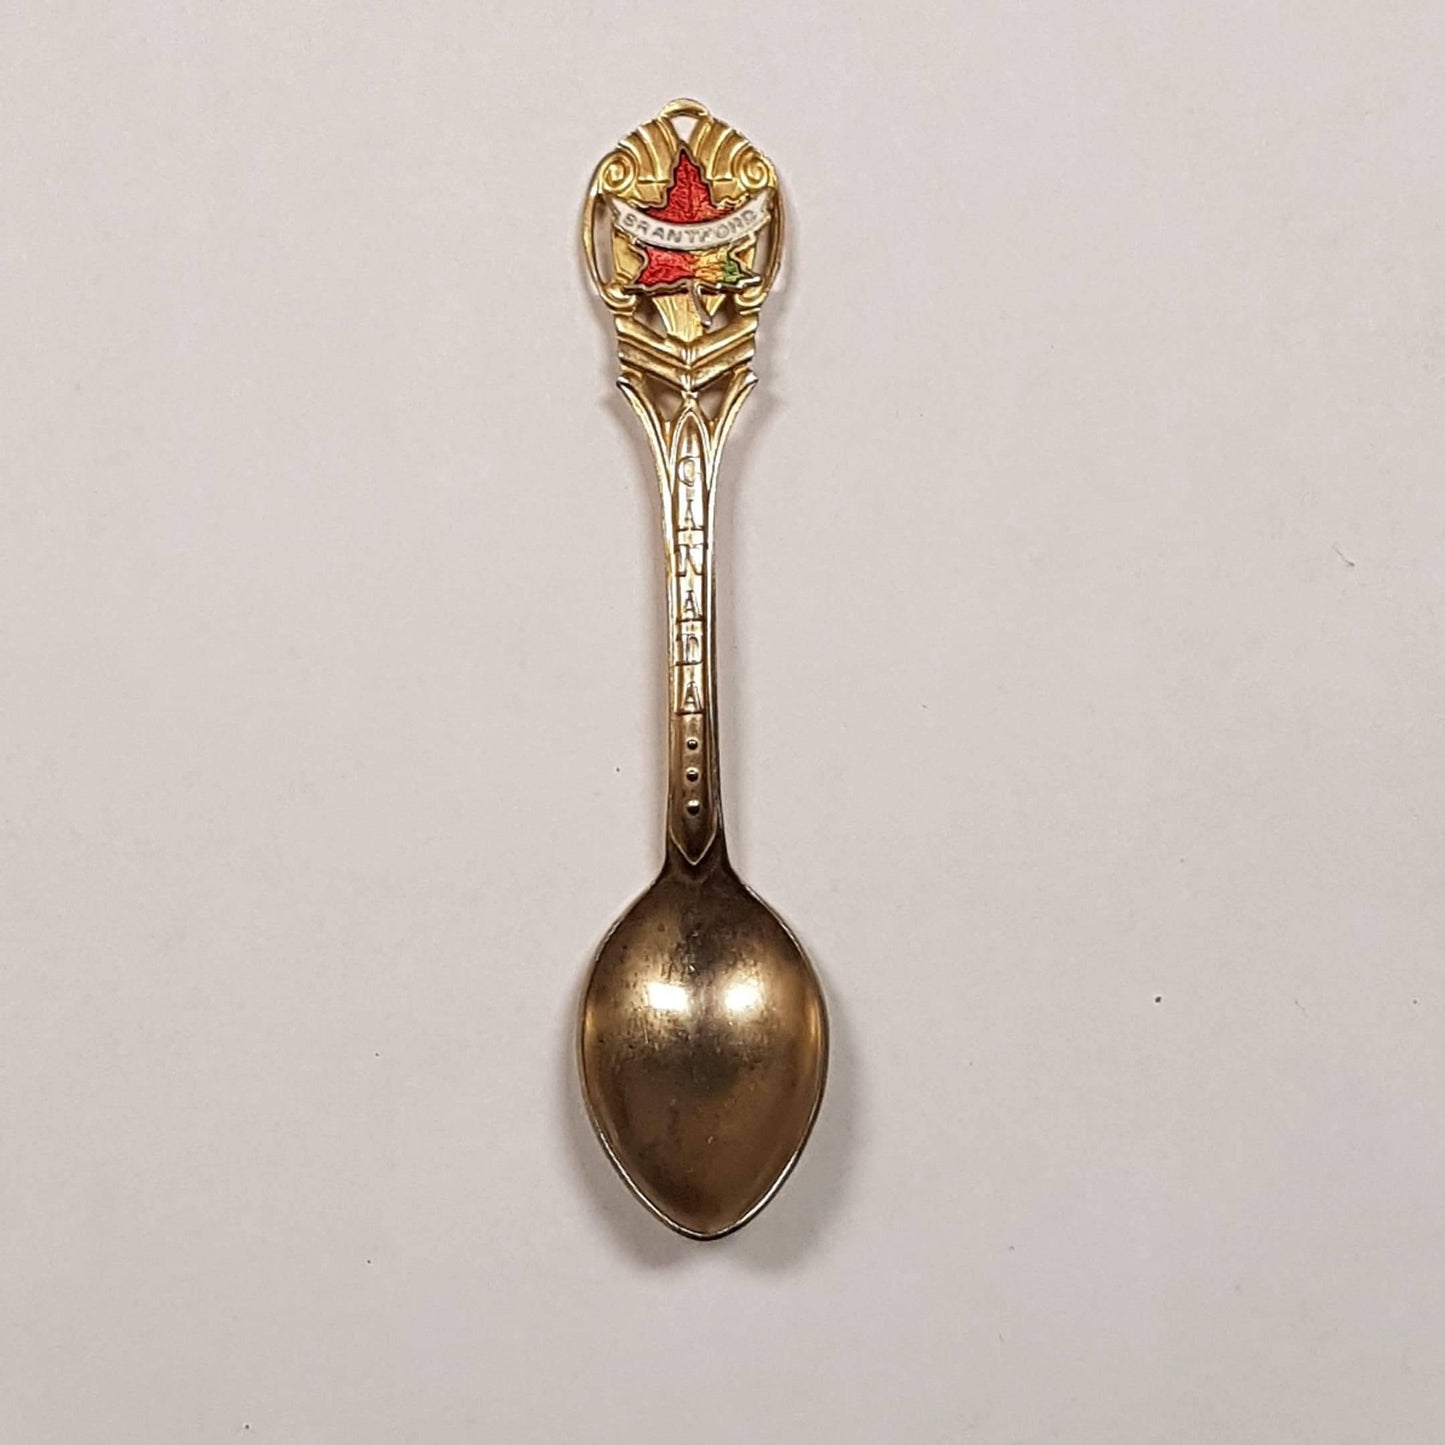 brantford canada gift spoon collectible souvenir travel keepsake